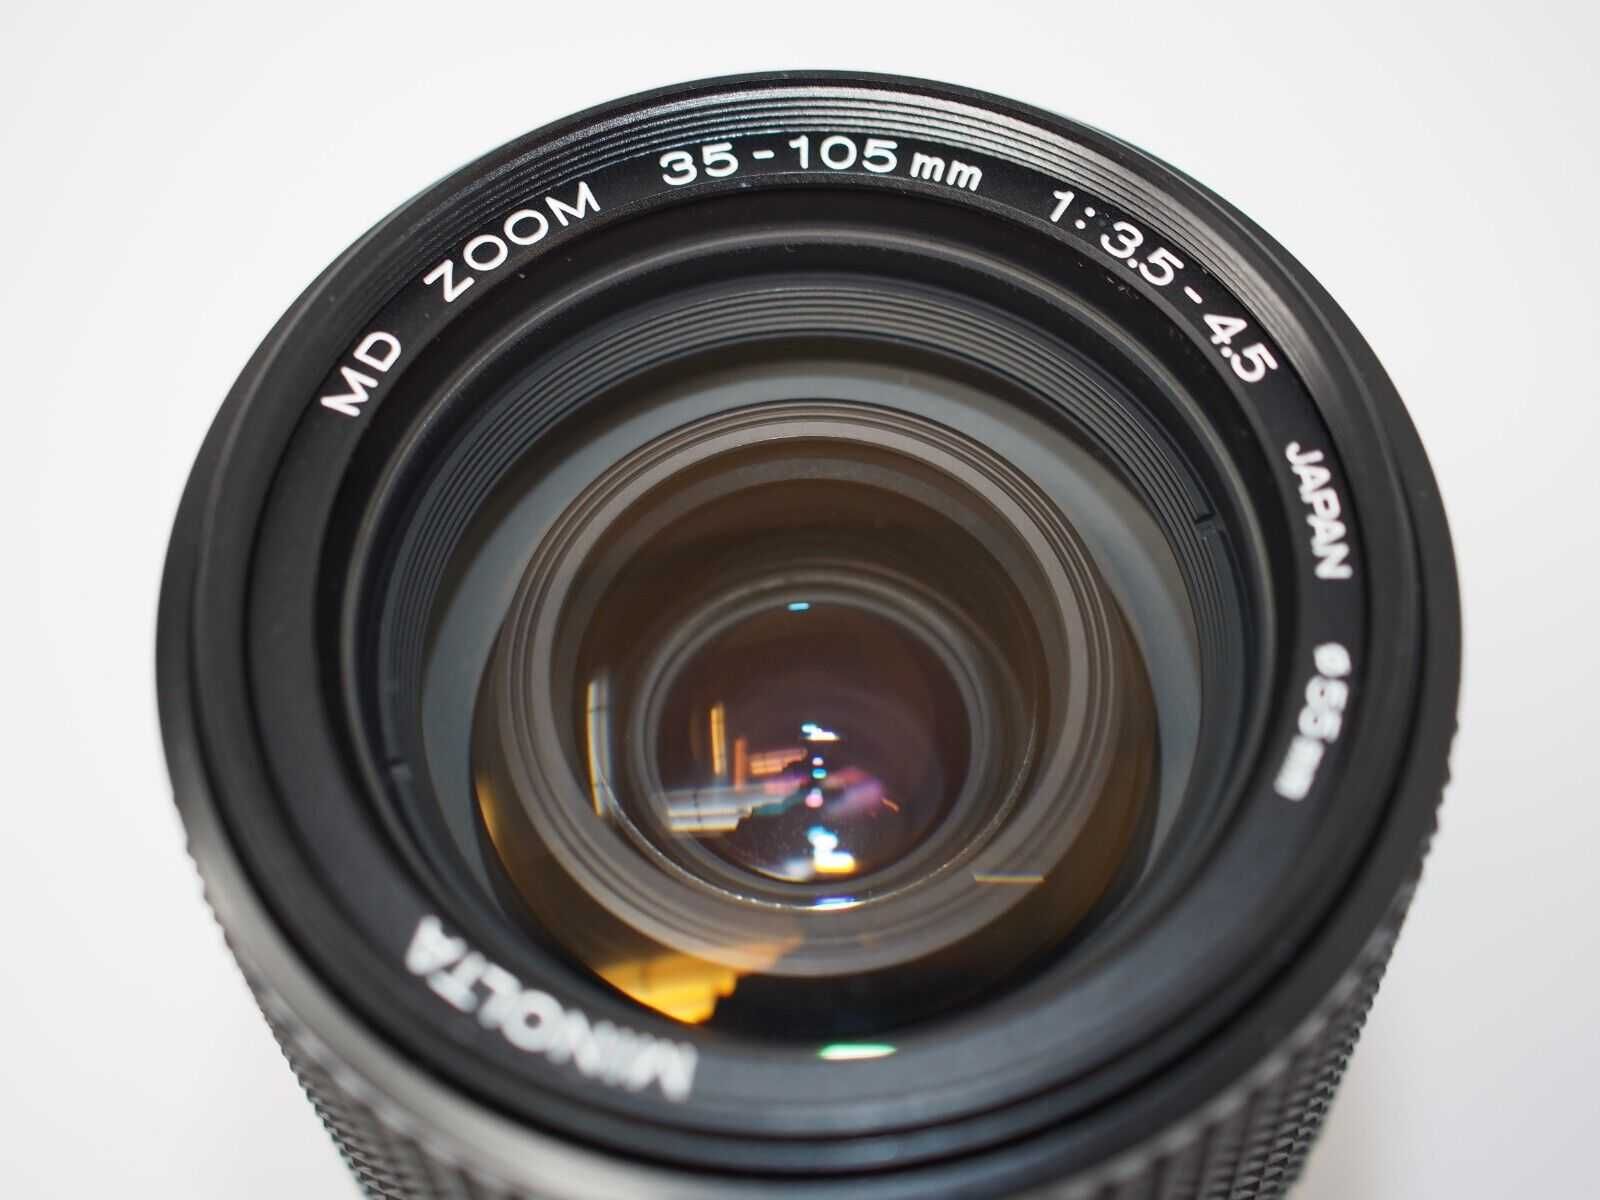 Minolta 35-105mm f3.5-4.5 MD Zoom - (testada e limpa)